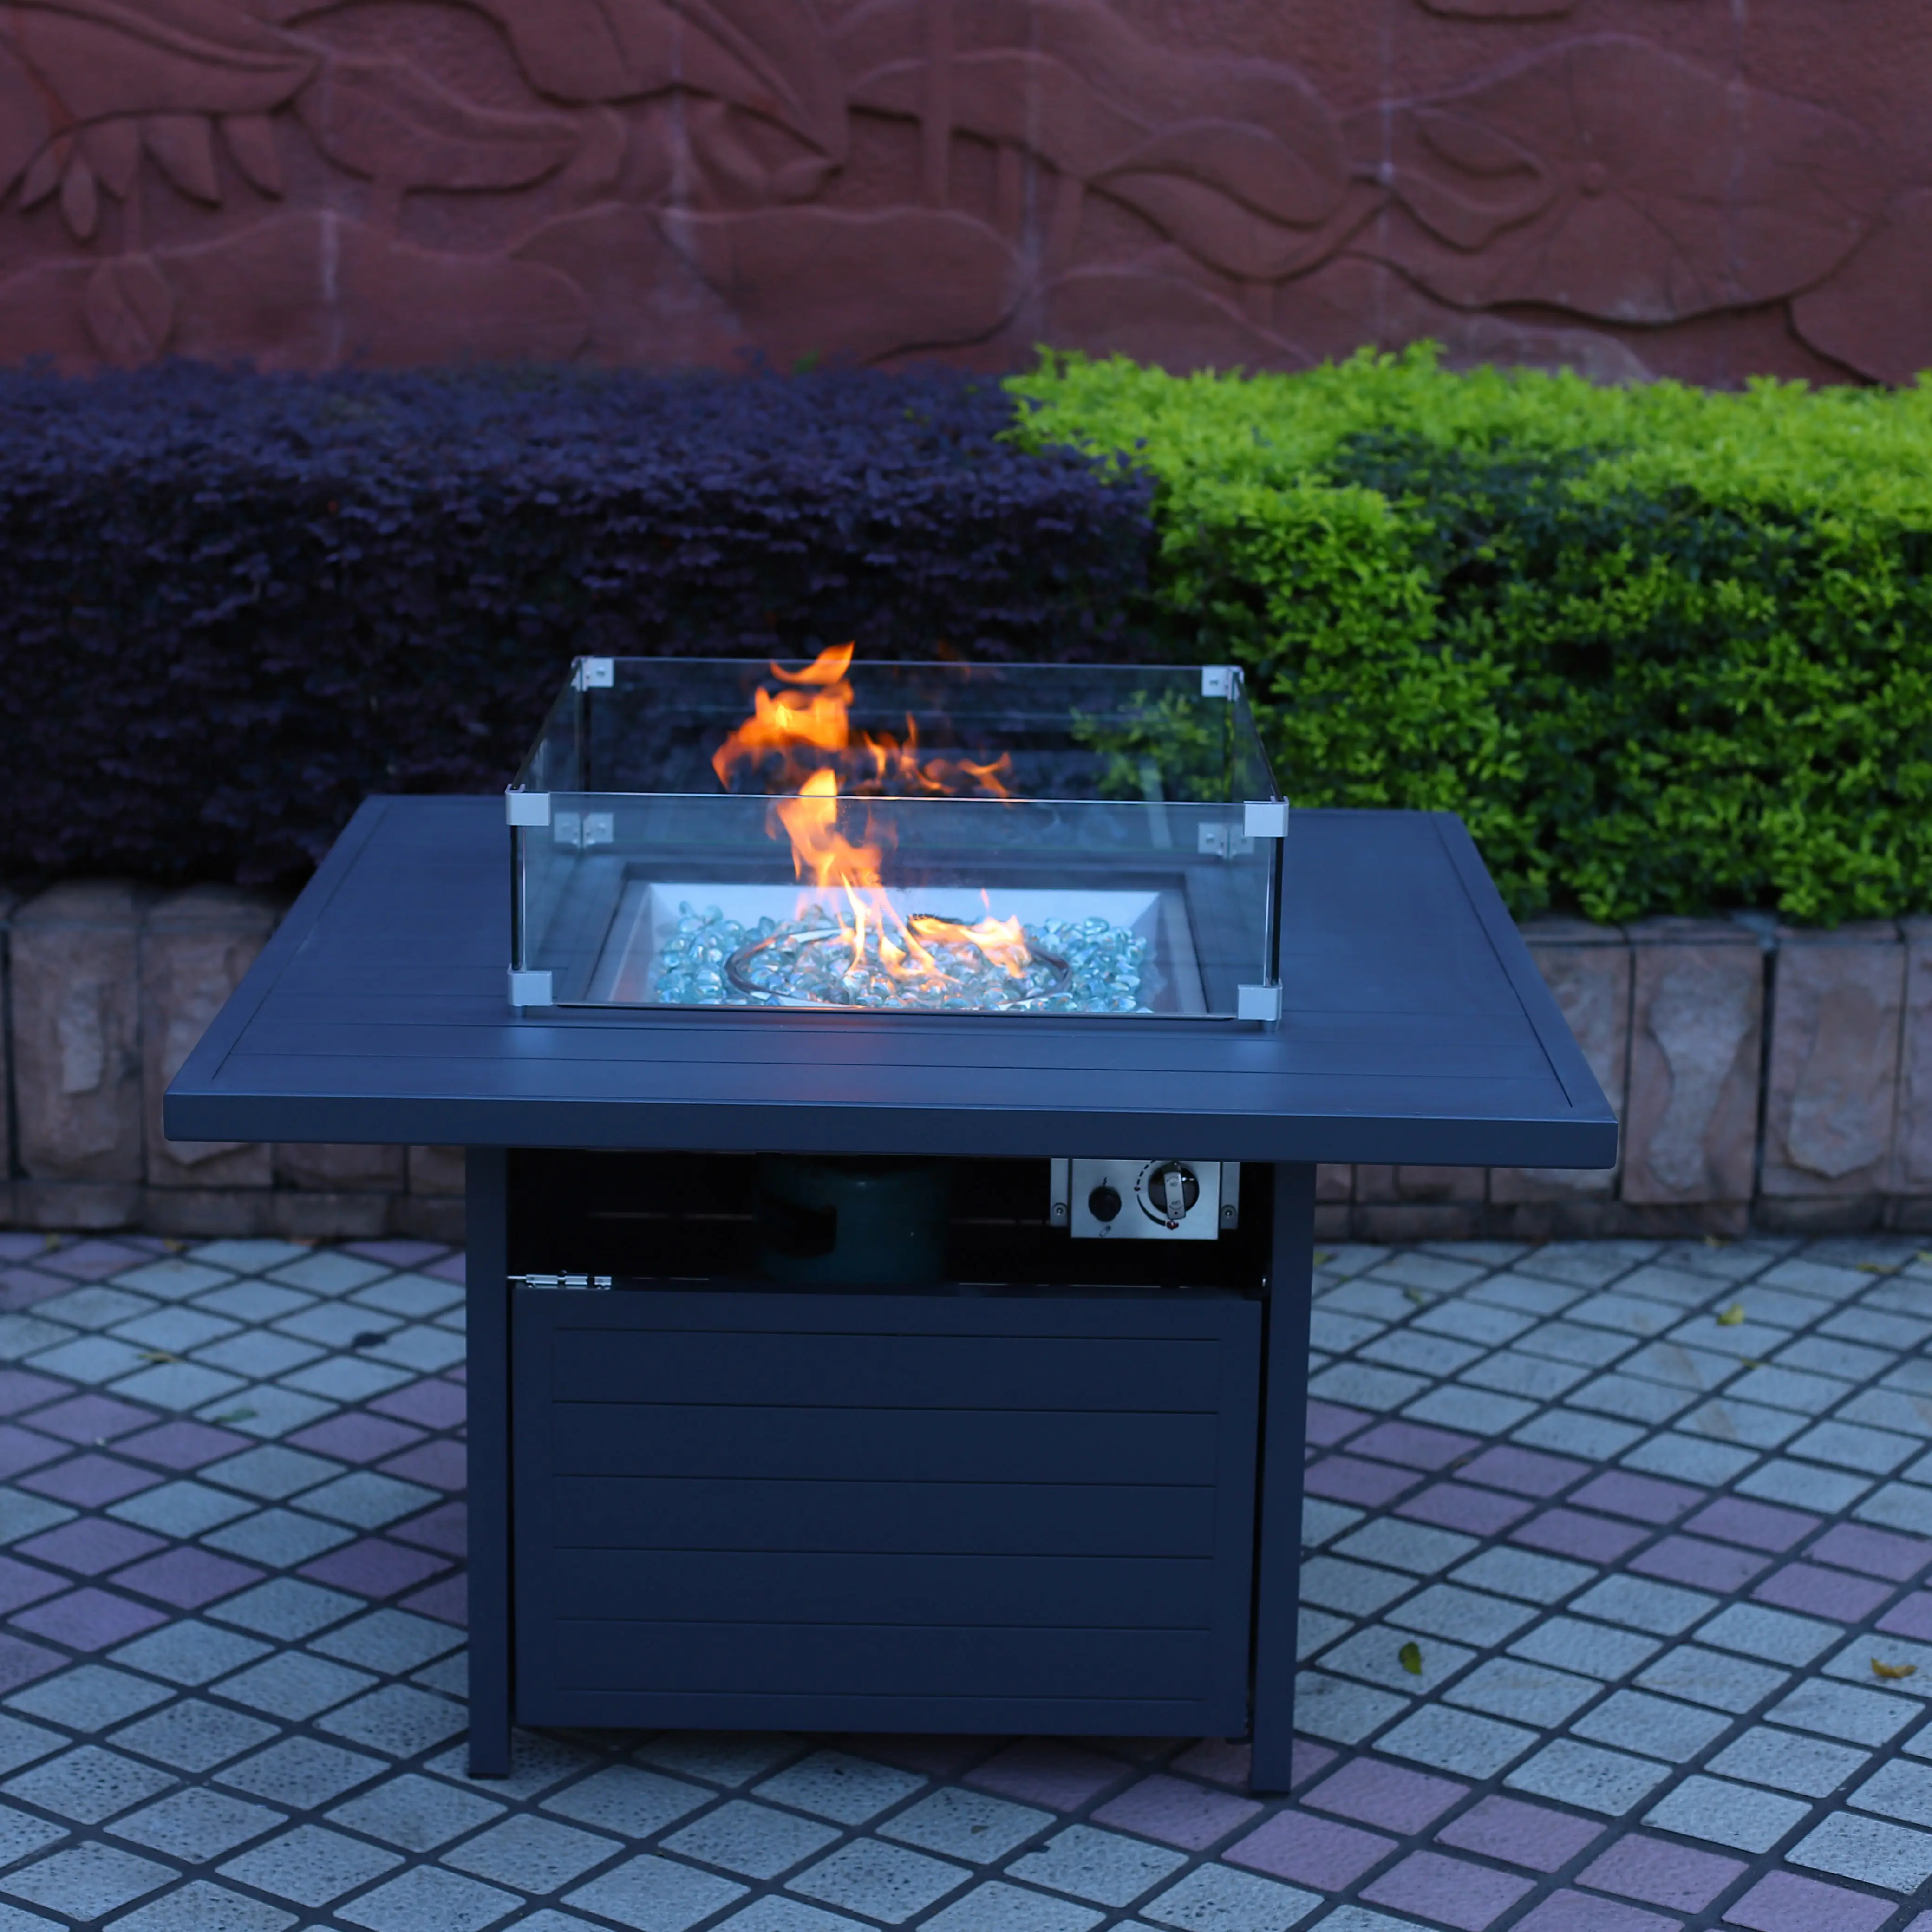 Lareira de alumínio para jardim, fogueira de mesa com contas de vidro, mobília para fogueira de jardim e exterior